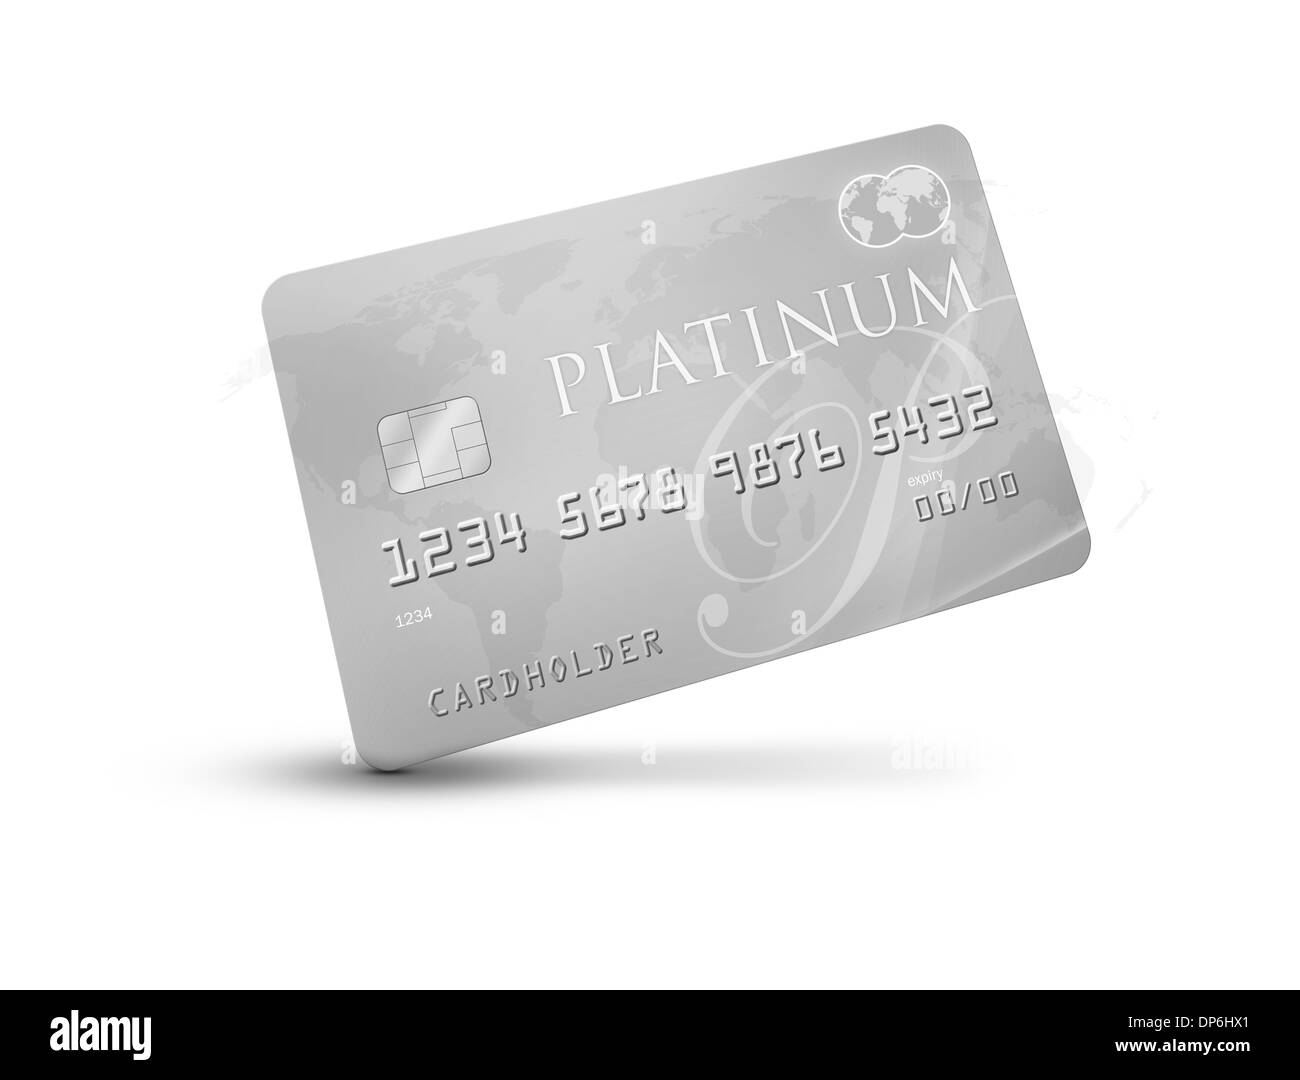 Carte de crédit/débit Platinum avec carte du monde dans l'arrière-plan avec les couleurs argent/gris debout sur son coin représentant un riche Banque D'Images